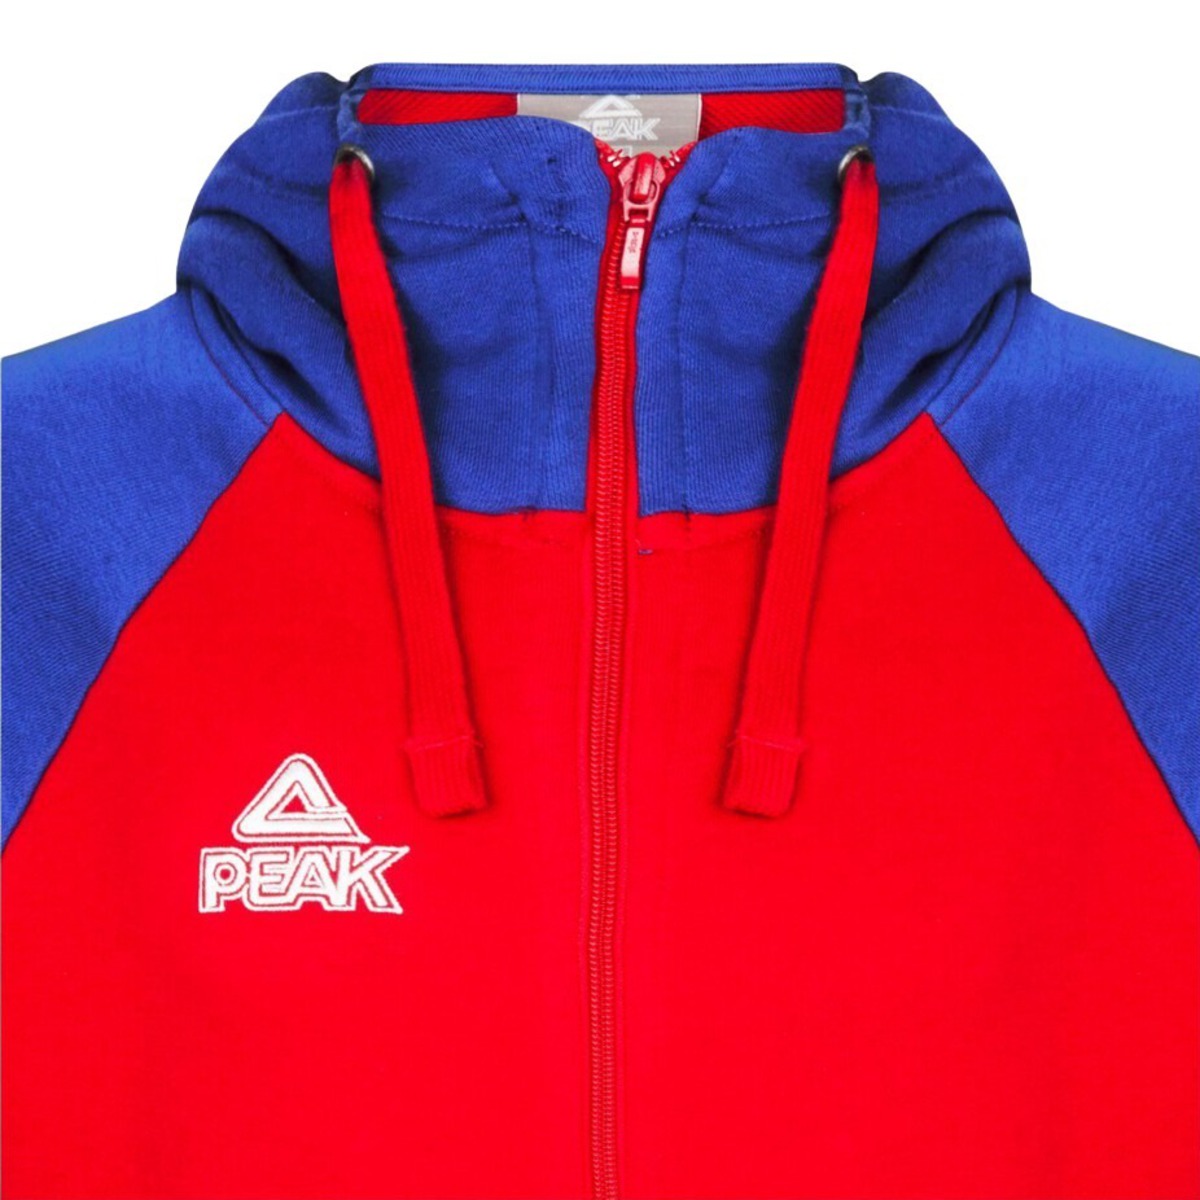 Chaqueta Peak Zip Bi-color Élite - Azul/Rojo - Chaqueta para Niños  MKP